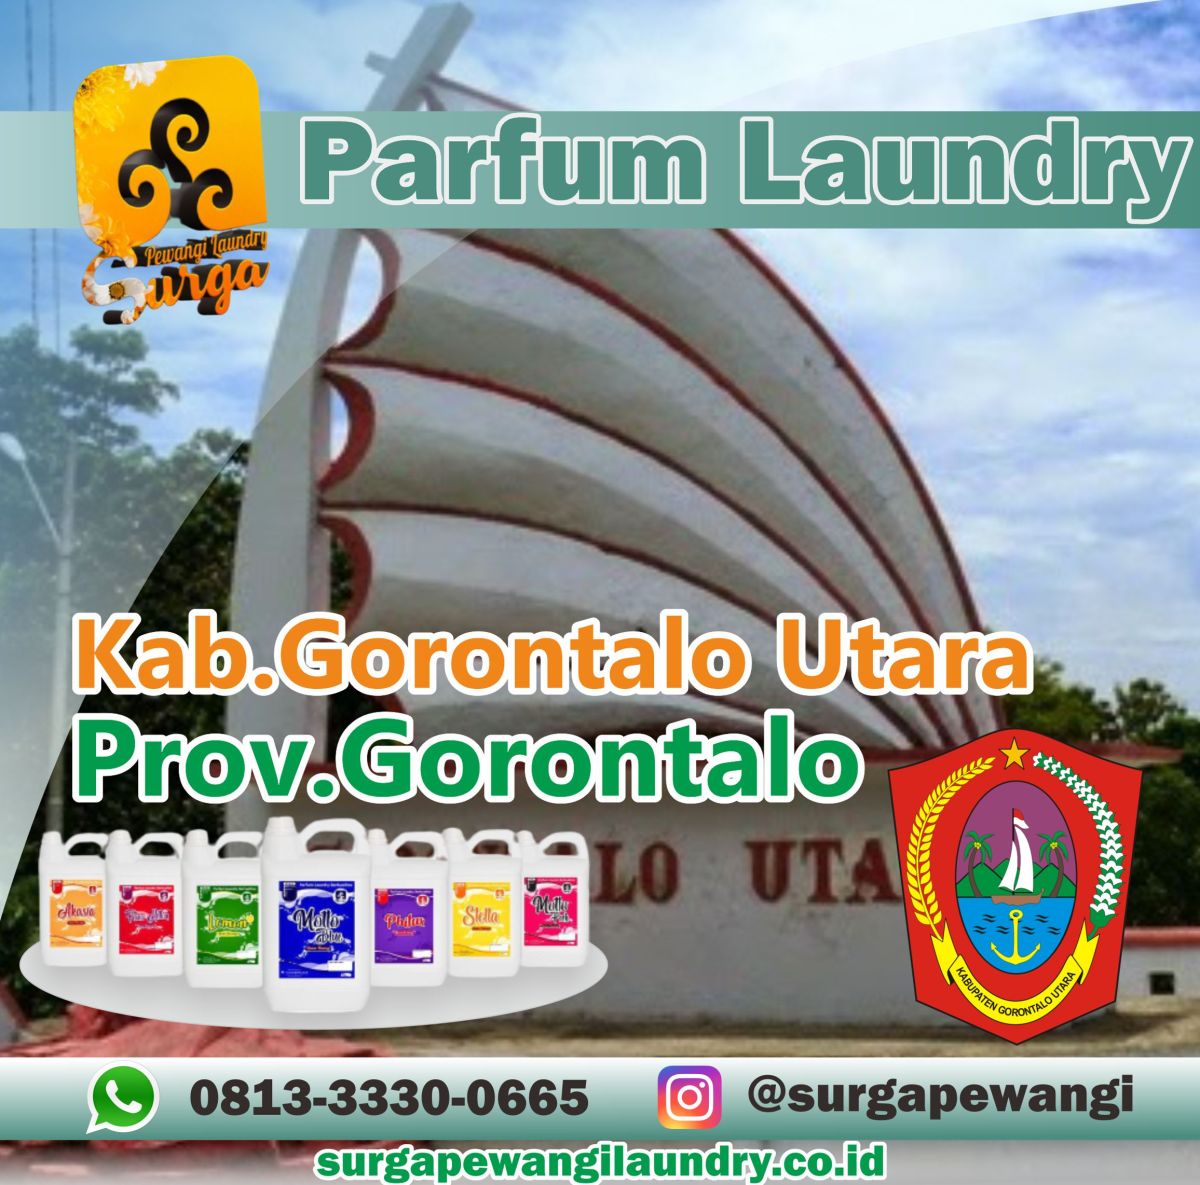 Parfum Laundry Kabupaten Gorontalo Utara, Gorontalo